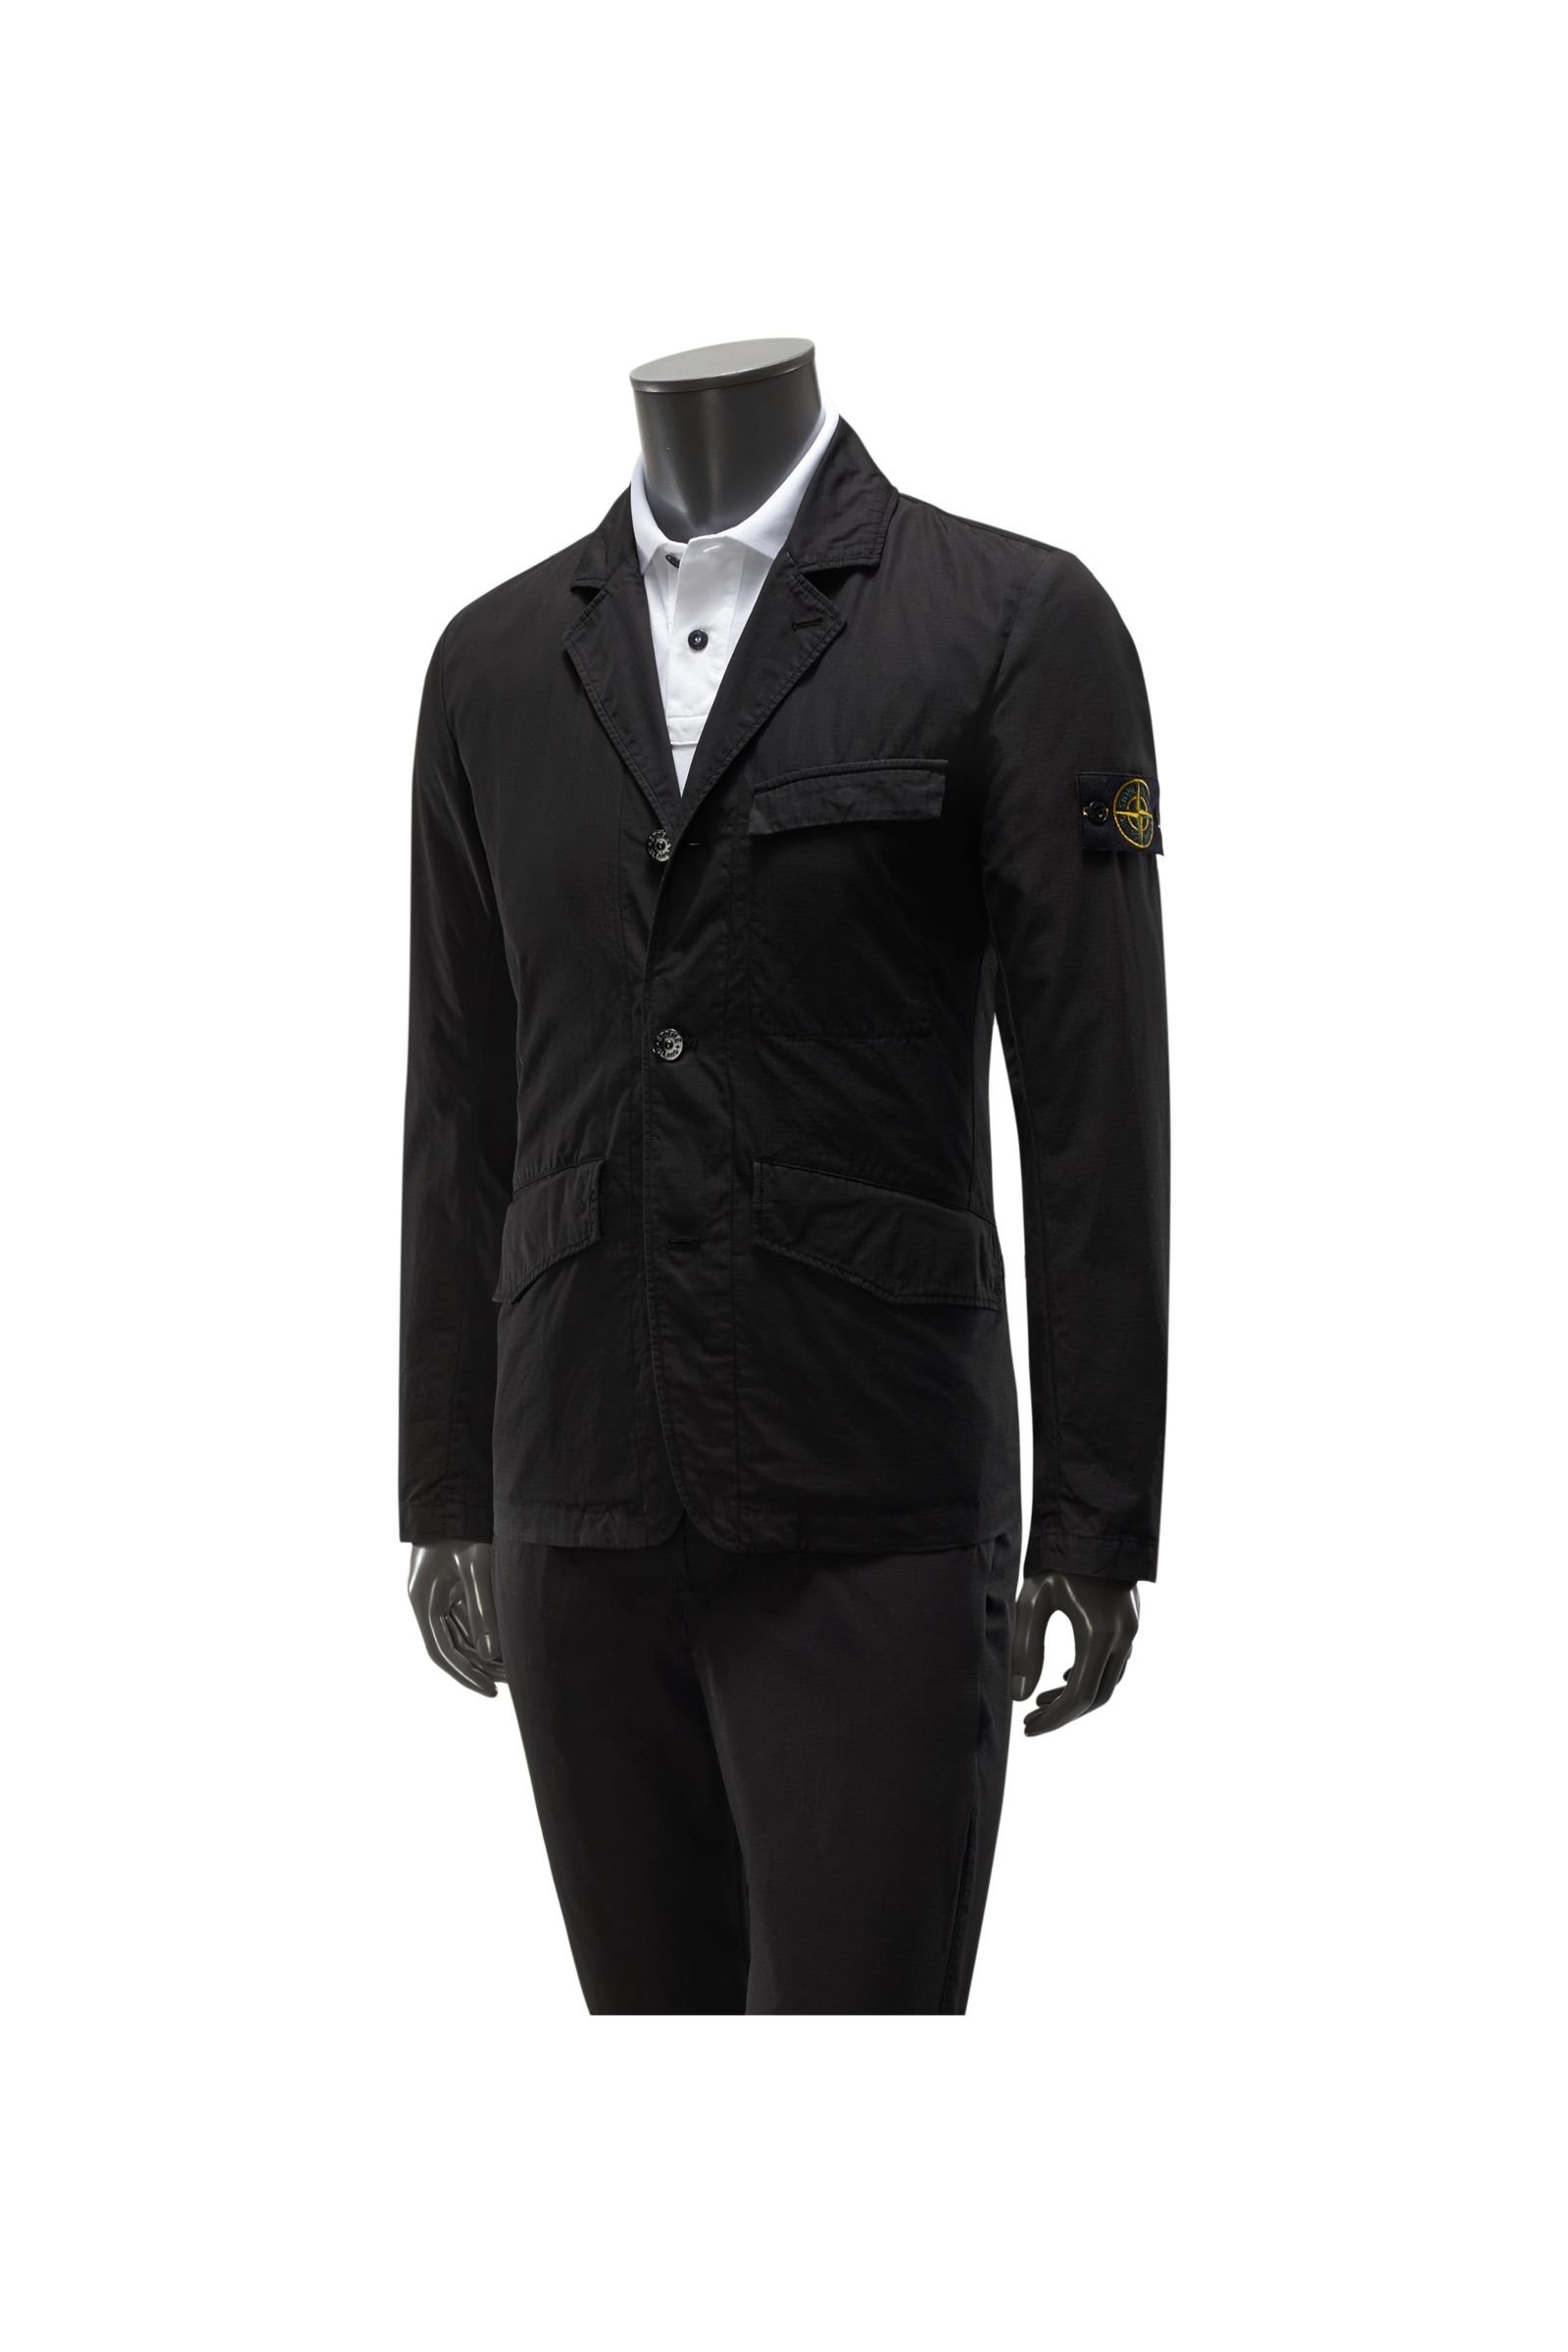 Cotton suit 'Structured Cotton' black